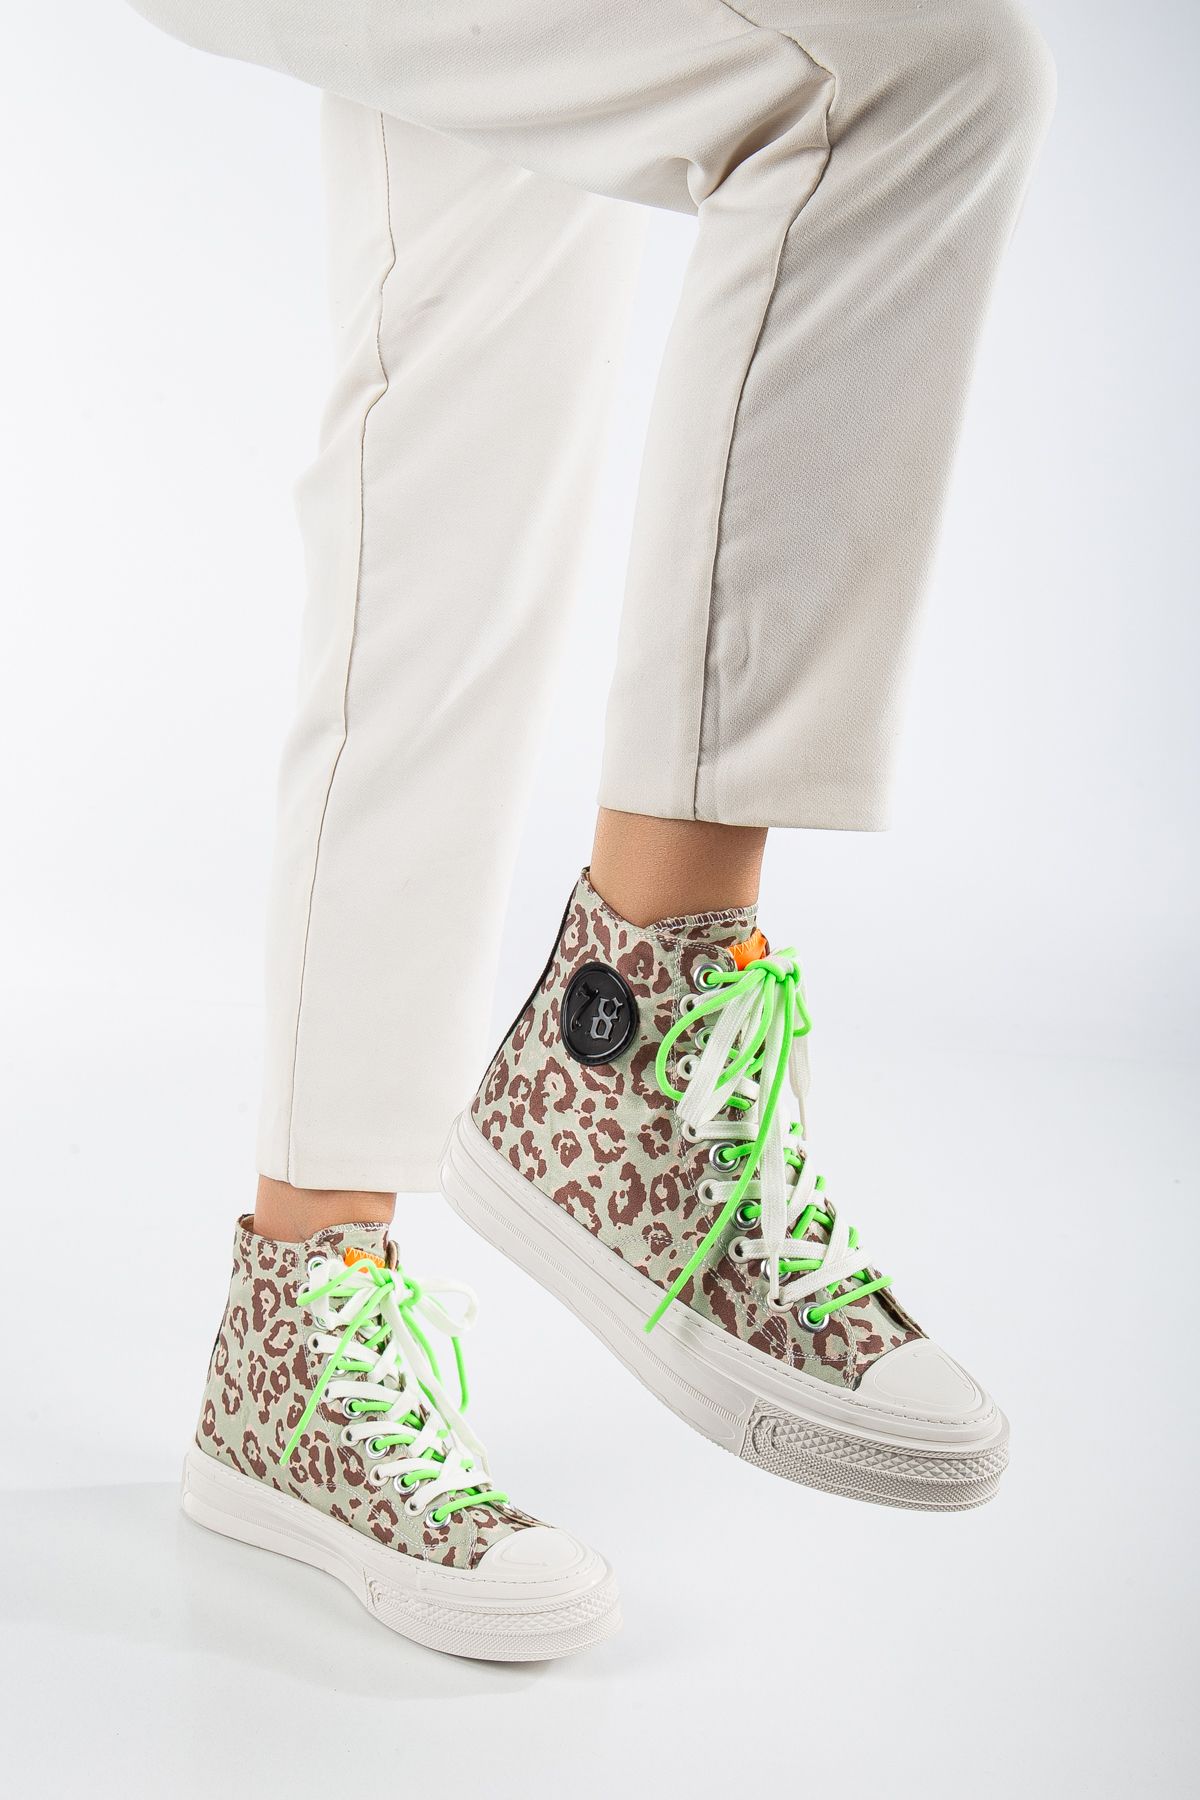 Guja 22K285-2 Leaopar Desenli Yeşil-Beyaz Bağcıklı Kadın Casual Günlük Ayakkabı